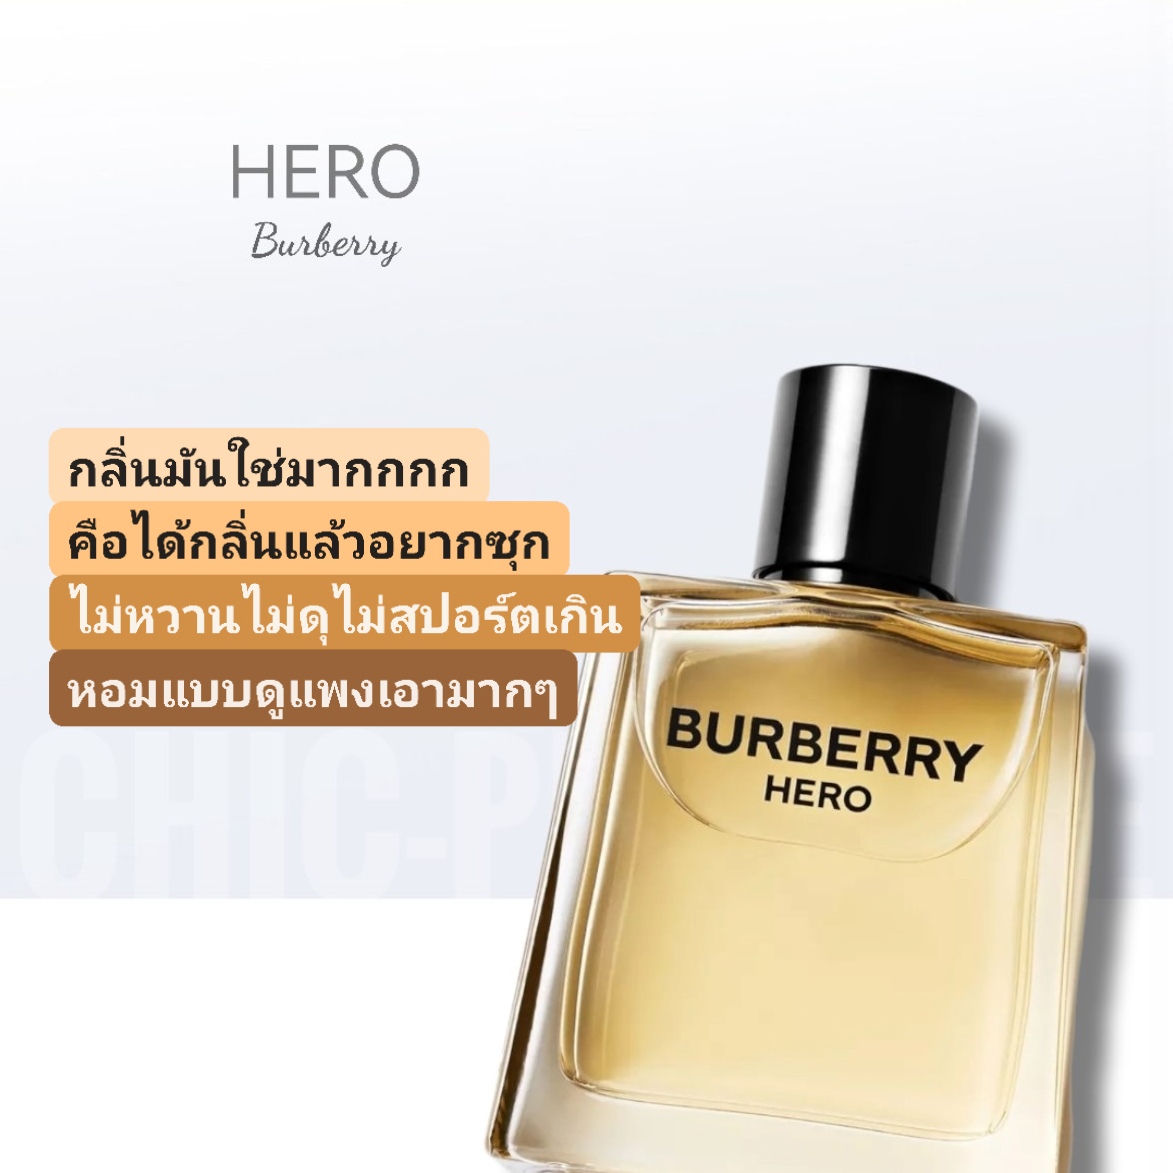 น้ำหอม Burberry Hero EDT 100ml - Chic-Perfume - ขายน้ำหอมแท้ น้ำหอมแบรนด์เนม  น้ำหอมผู้ชาย น้ำหอมผู้หญิง ราคาถูก มั่นใจของแท้ ล้าน% จัดส่งฟรี EMS :  Inspired by 